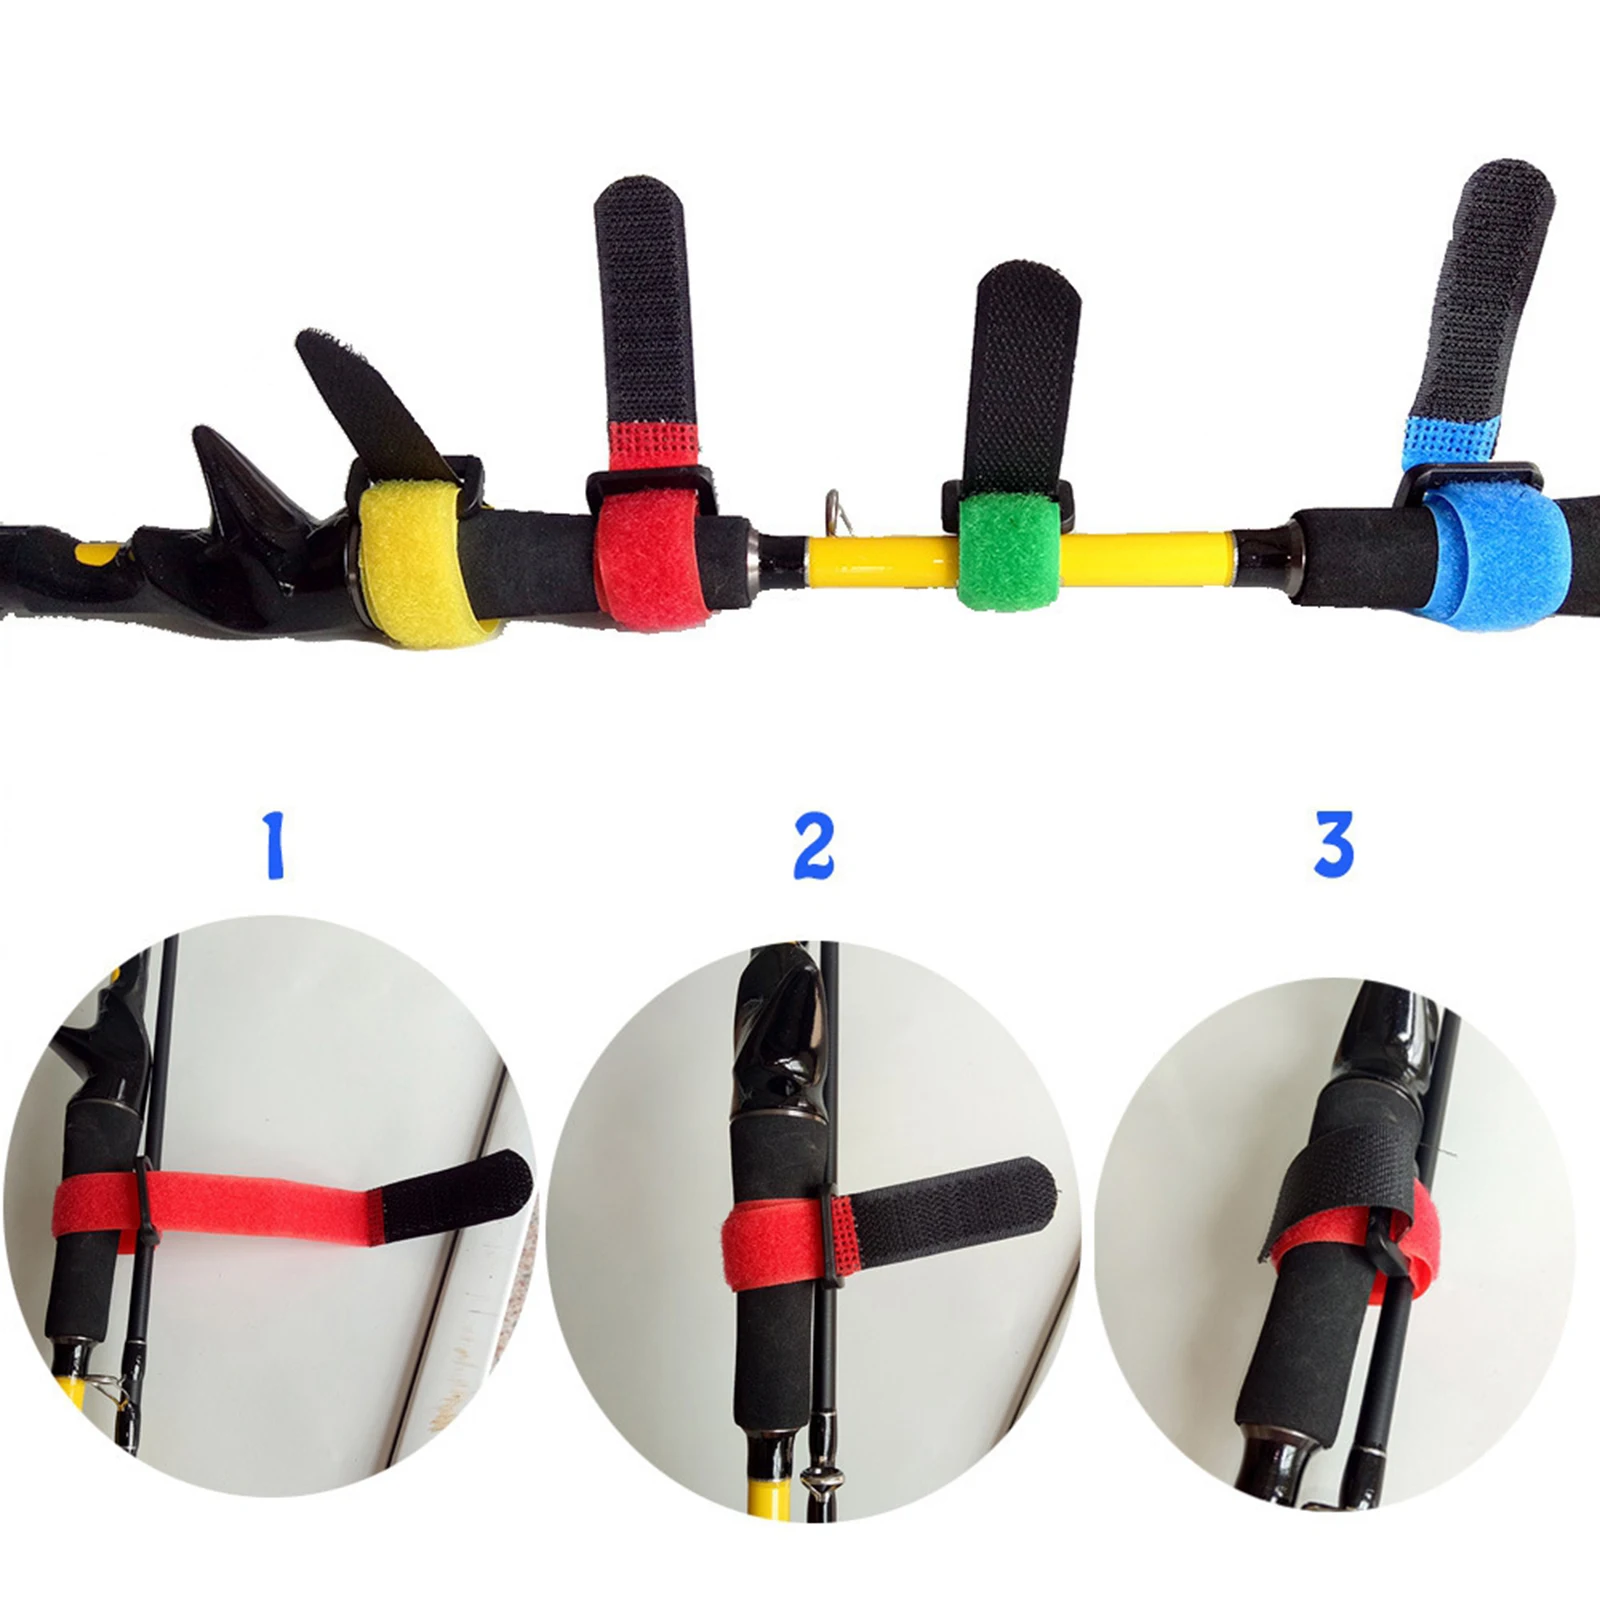 10pcs Fishing Rods Belt Ties Strap Stretchy Cable Belt Suspender Fastener Holder Compression Bag Backpack Luggage Straps Band